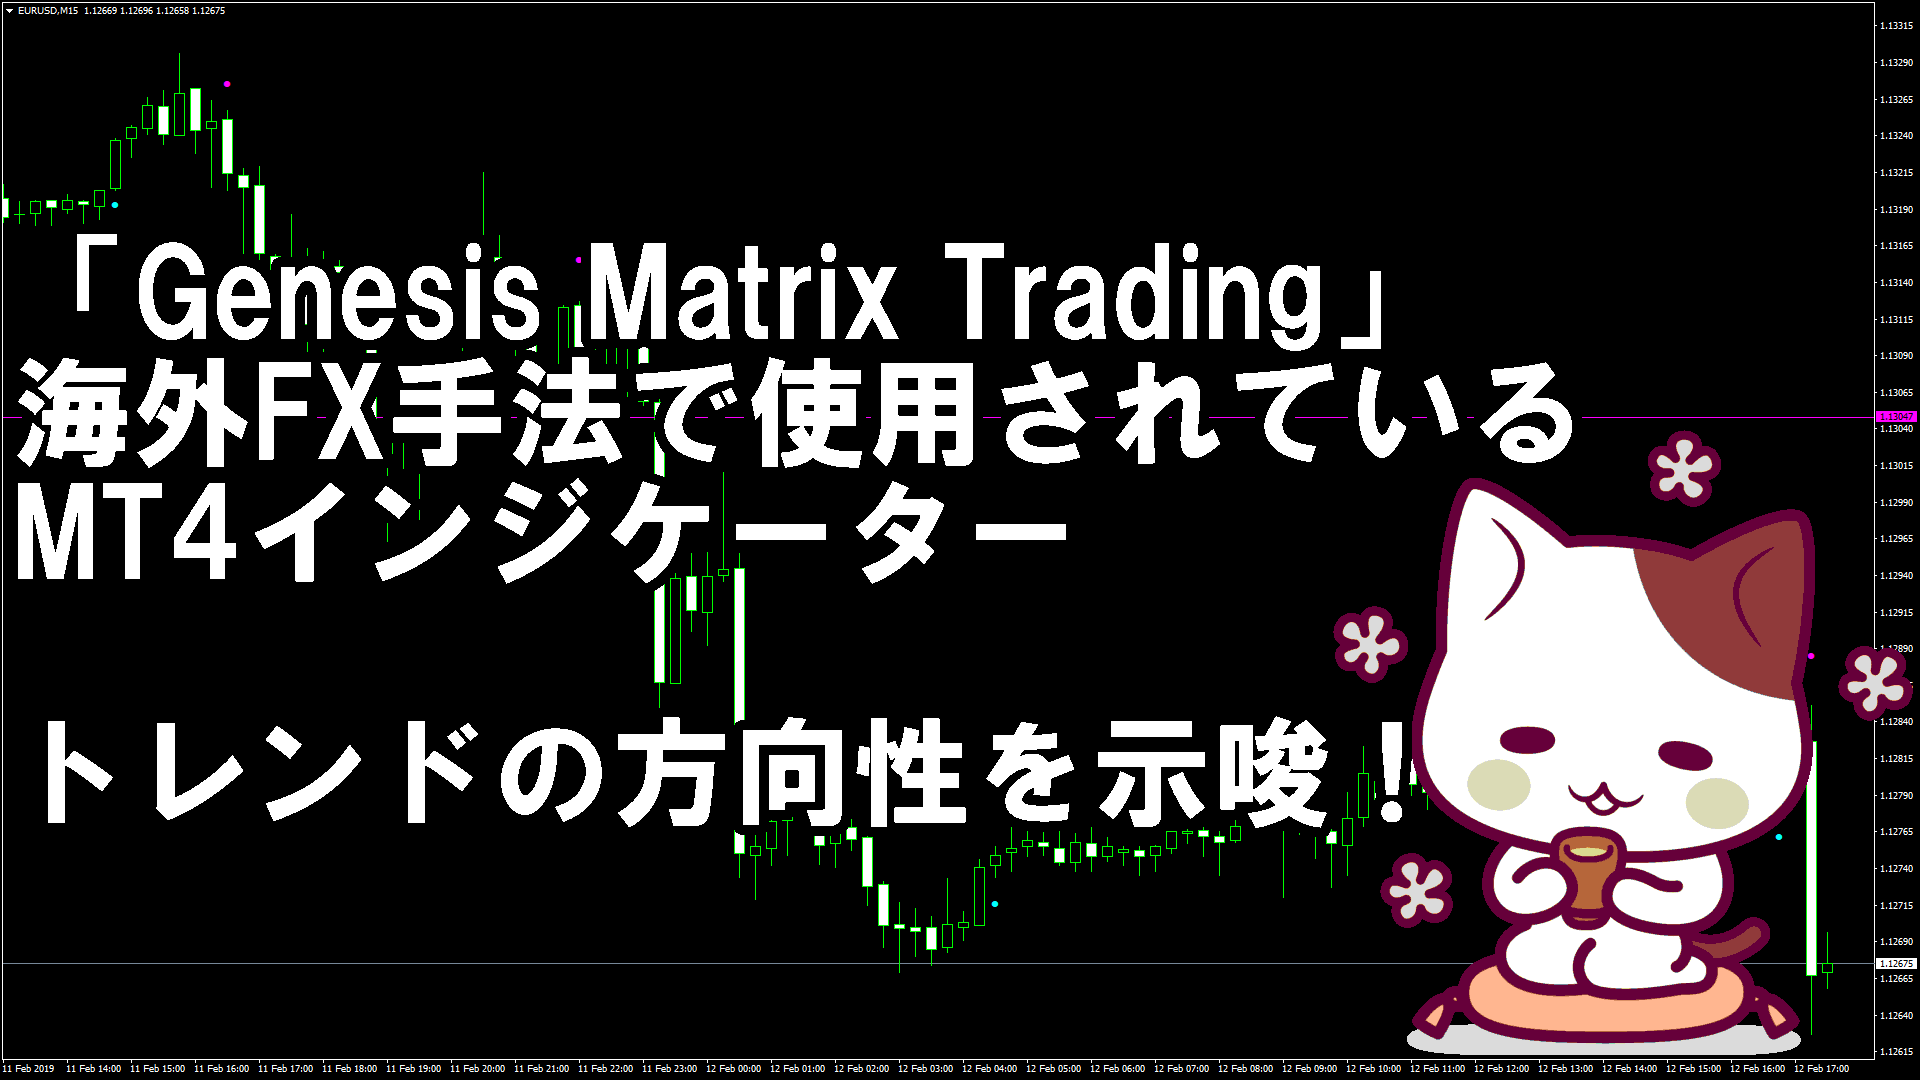 「Genesis Matrix Trading」という手法で使用されているトレンドの方向性を示唆するMT4インジケーター『ASCT1sig』